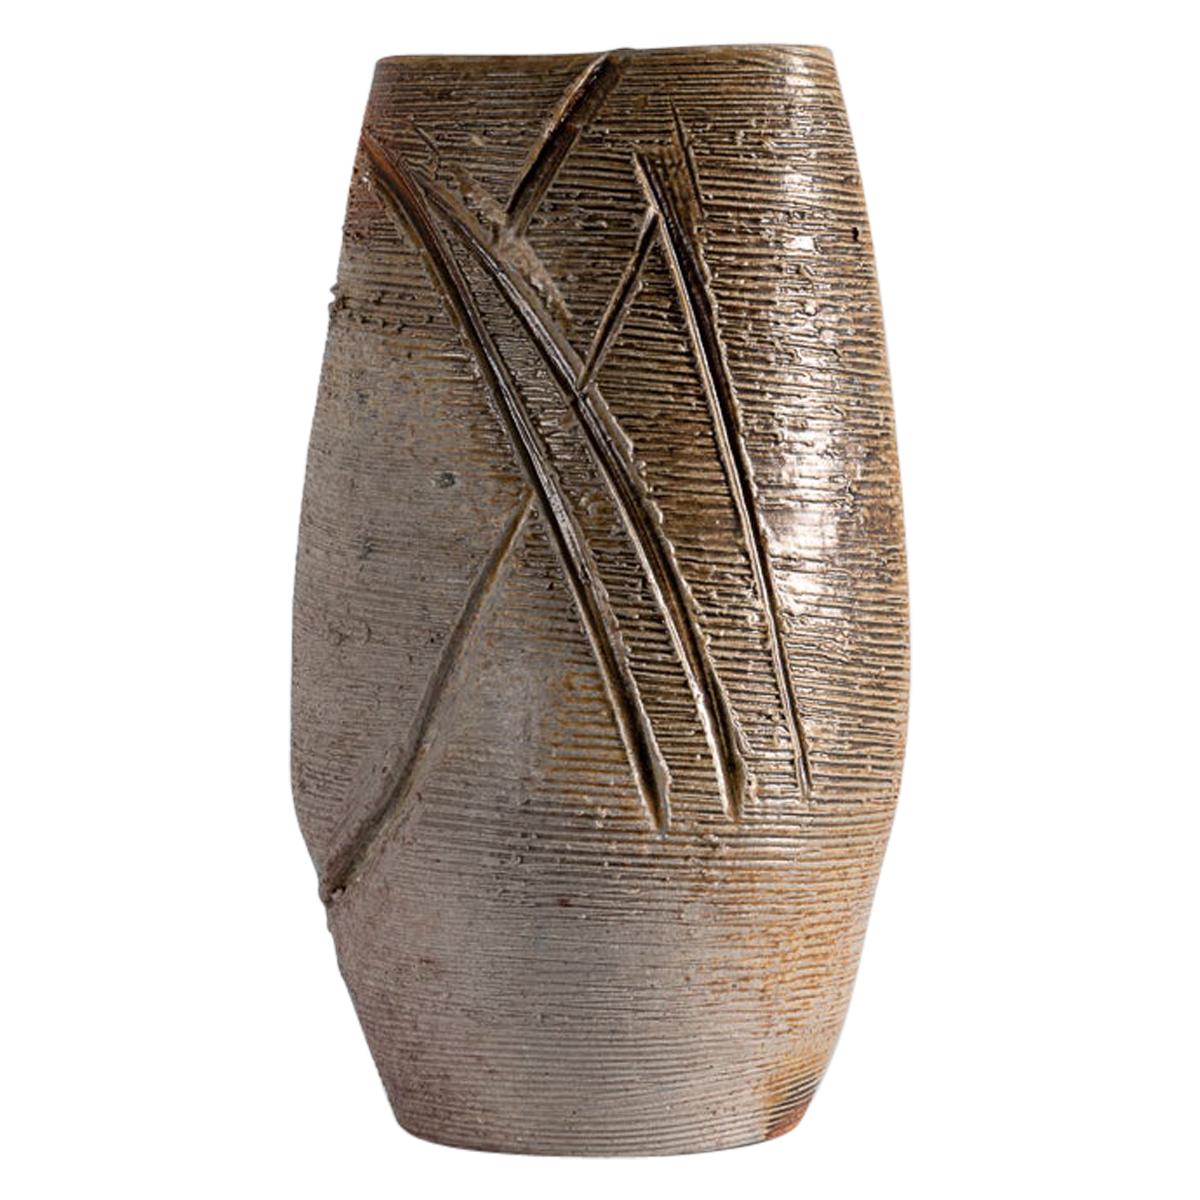 Eric Astoul, Cylindre Incisé Strié, La Borne, Sculptural Vase, France, 2000